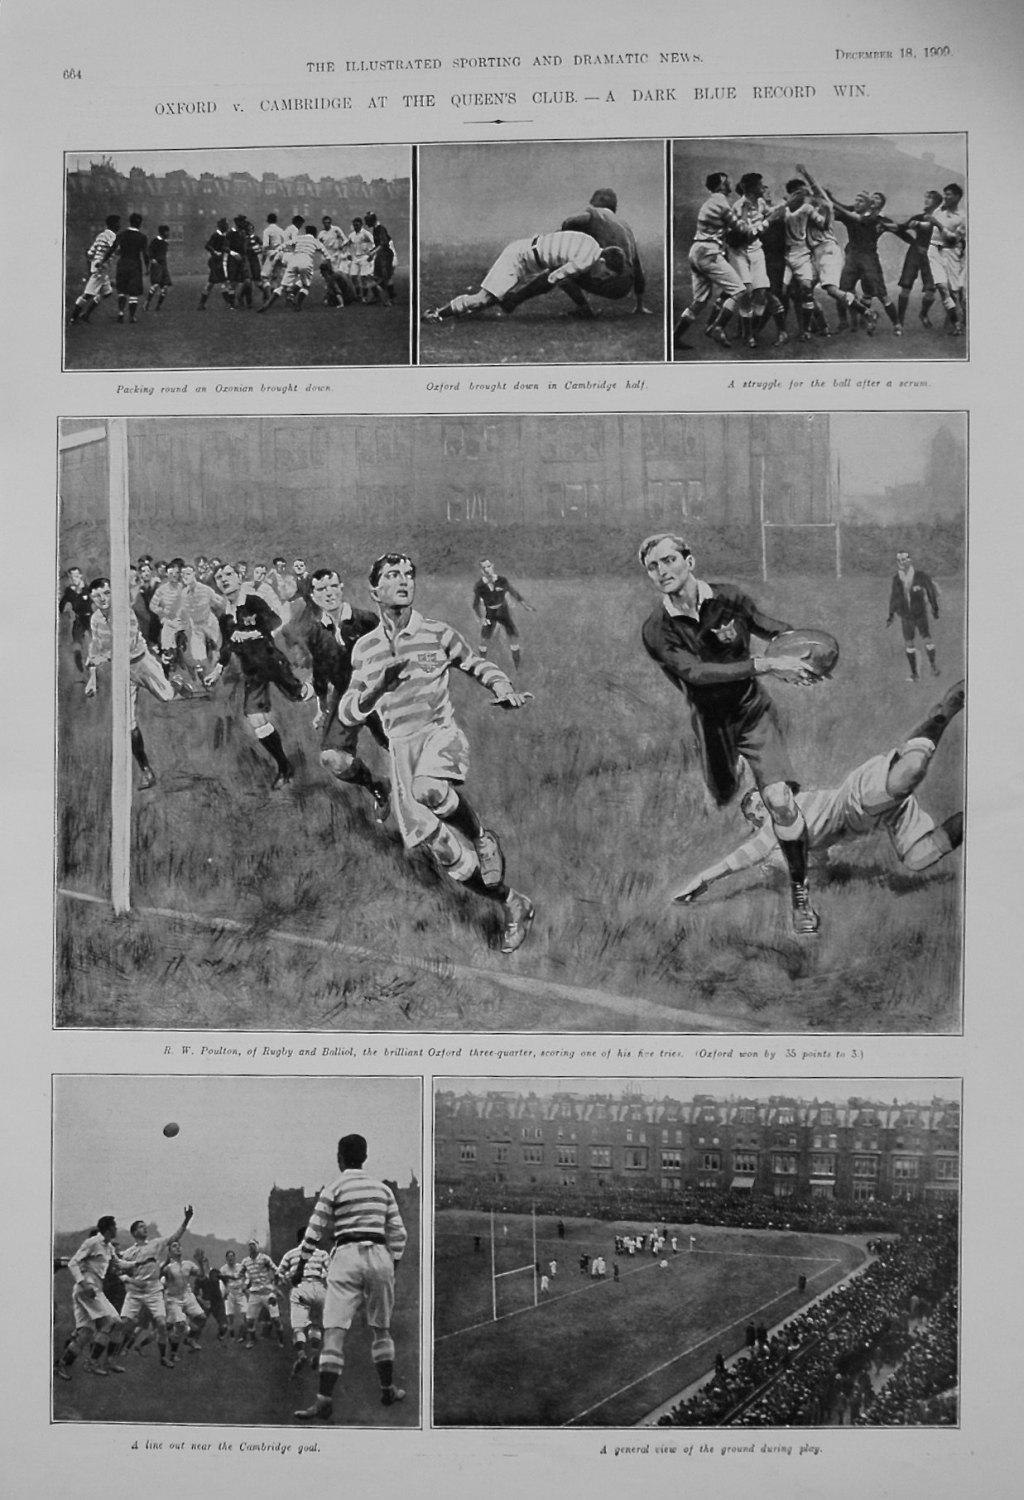 Oxford v. Cambridge at the Queen's Club.- A Dark Blue Record Win. 1909